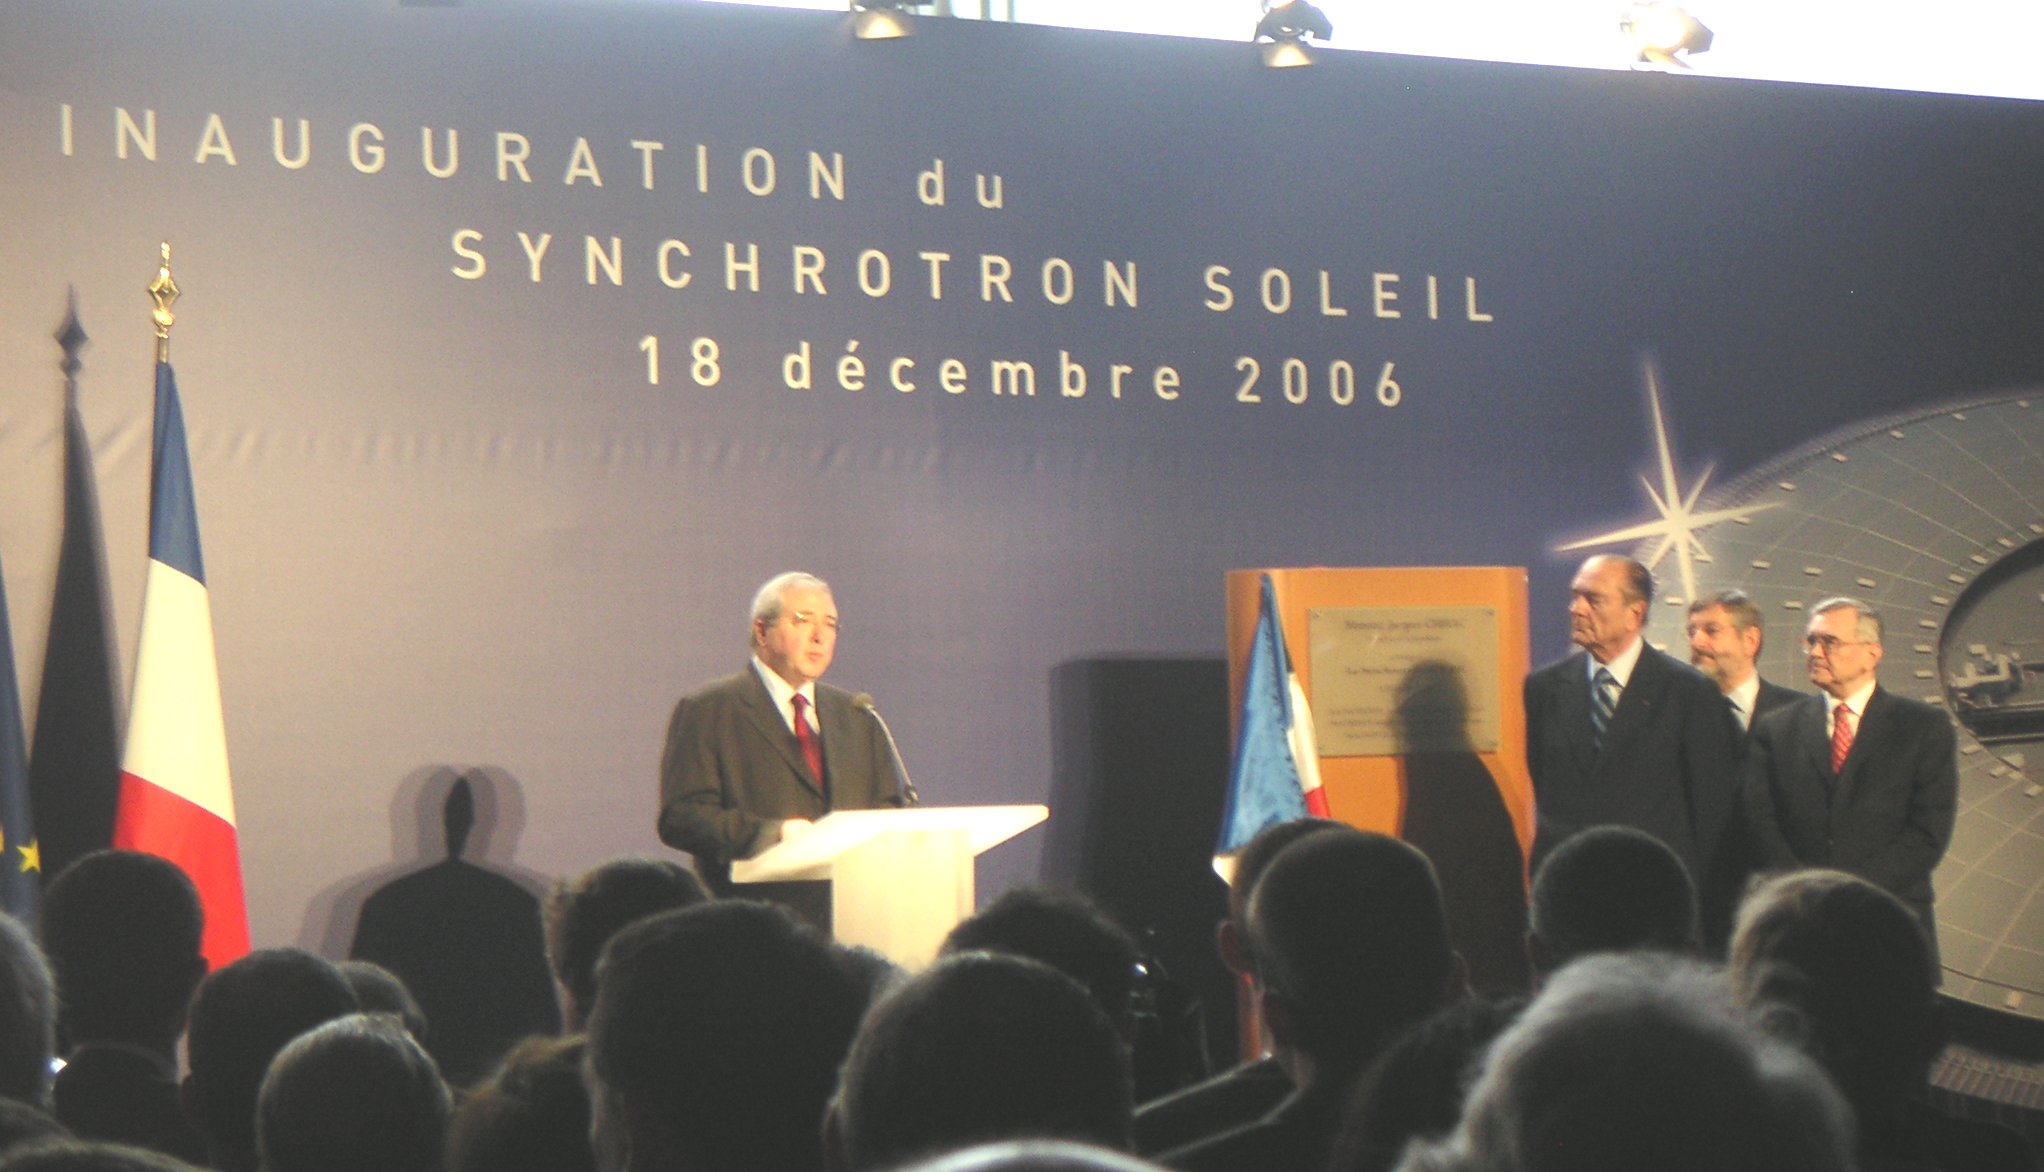     Inauguration du synchrotron SOLEIL par le Président de la République.